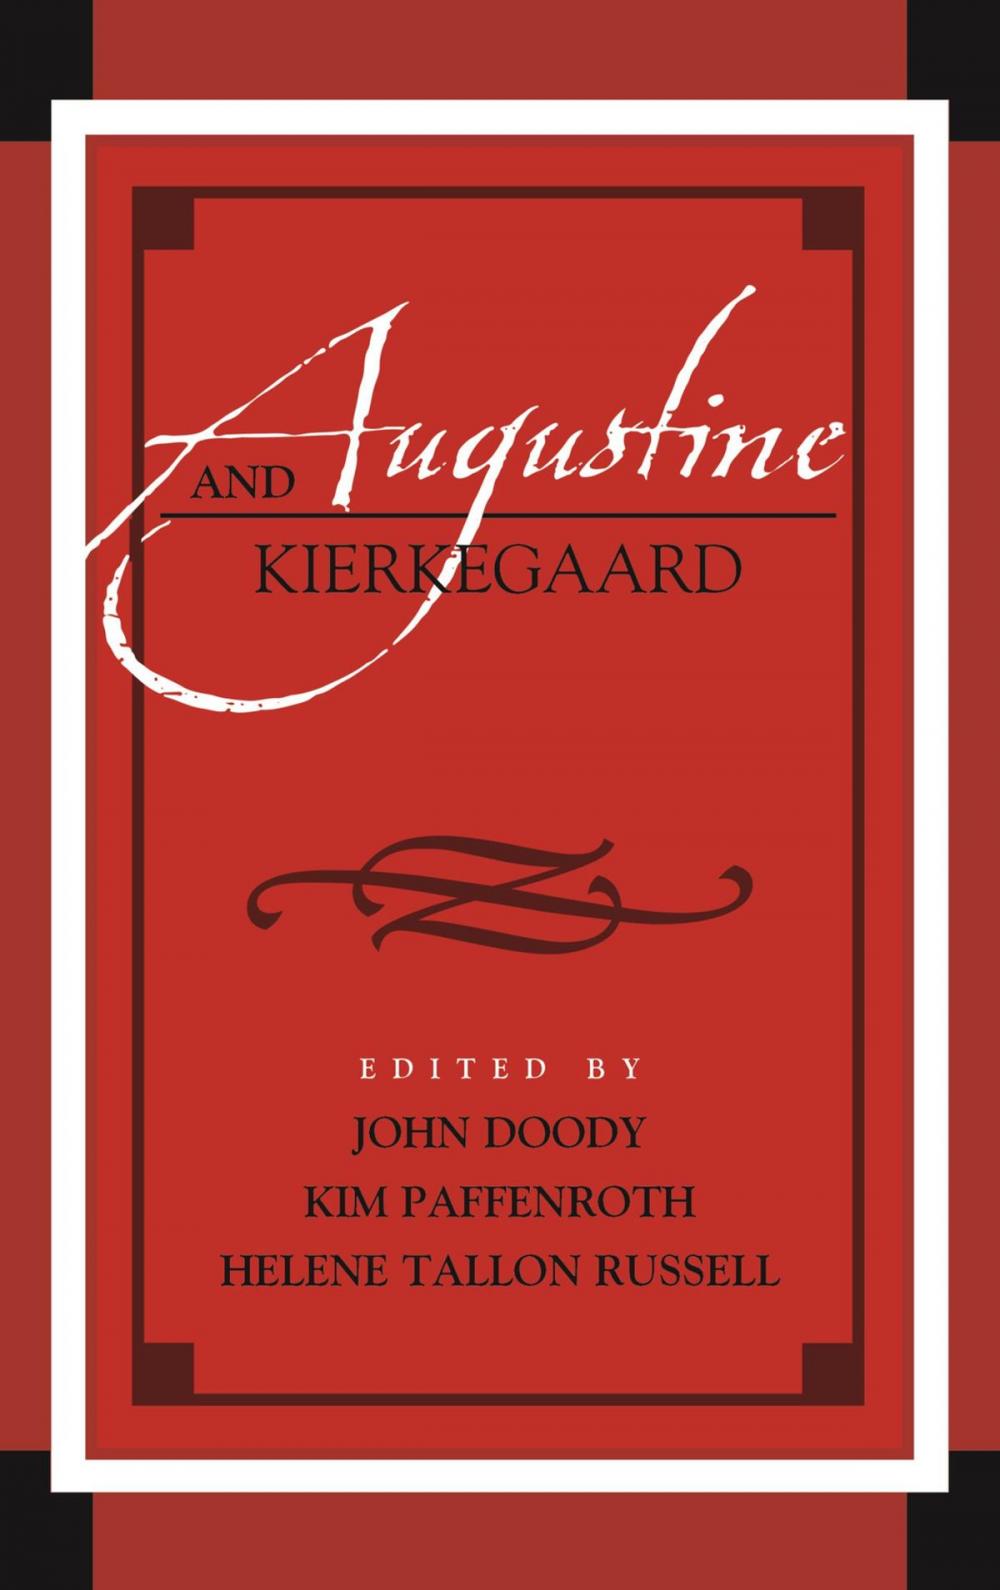 Big bigCover of Augustine and Kierkegaard